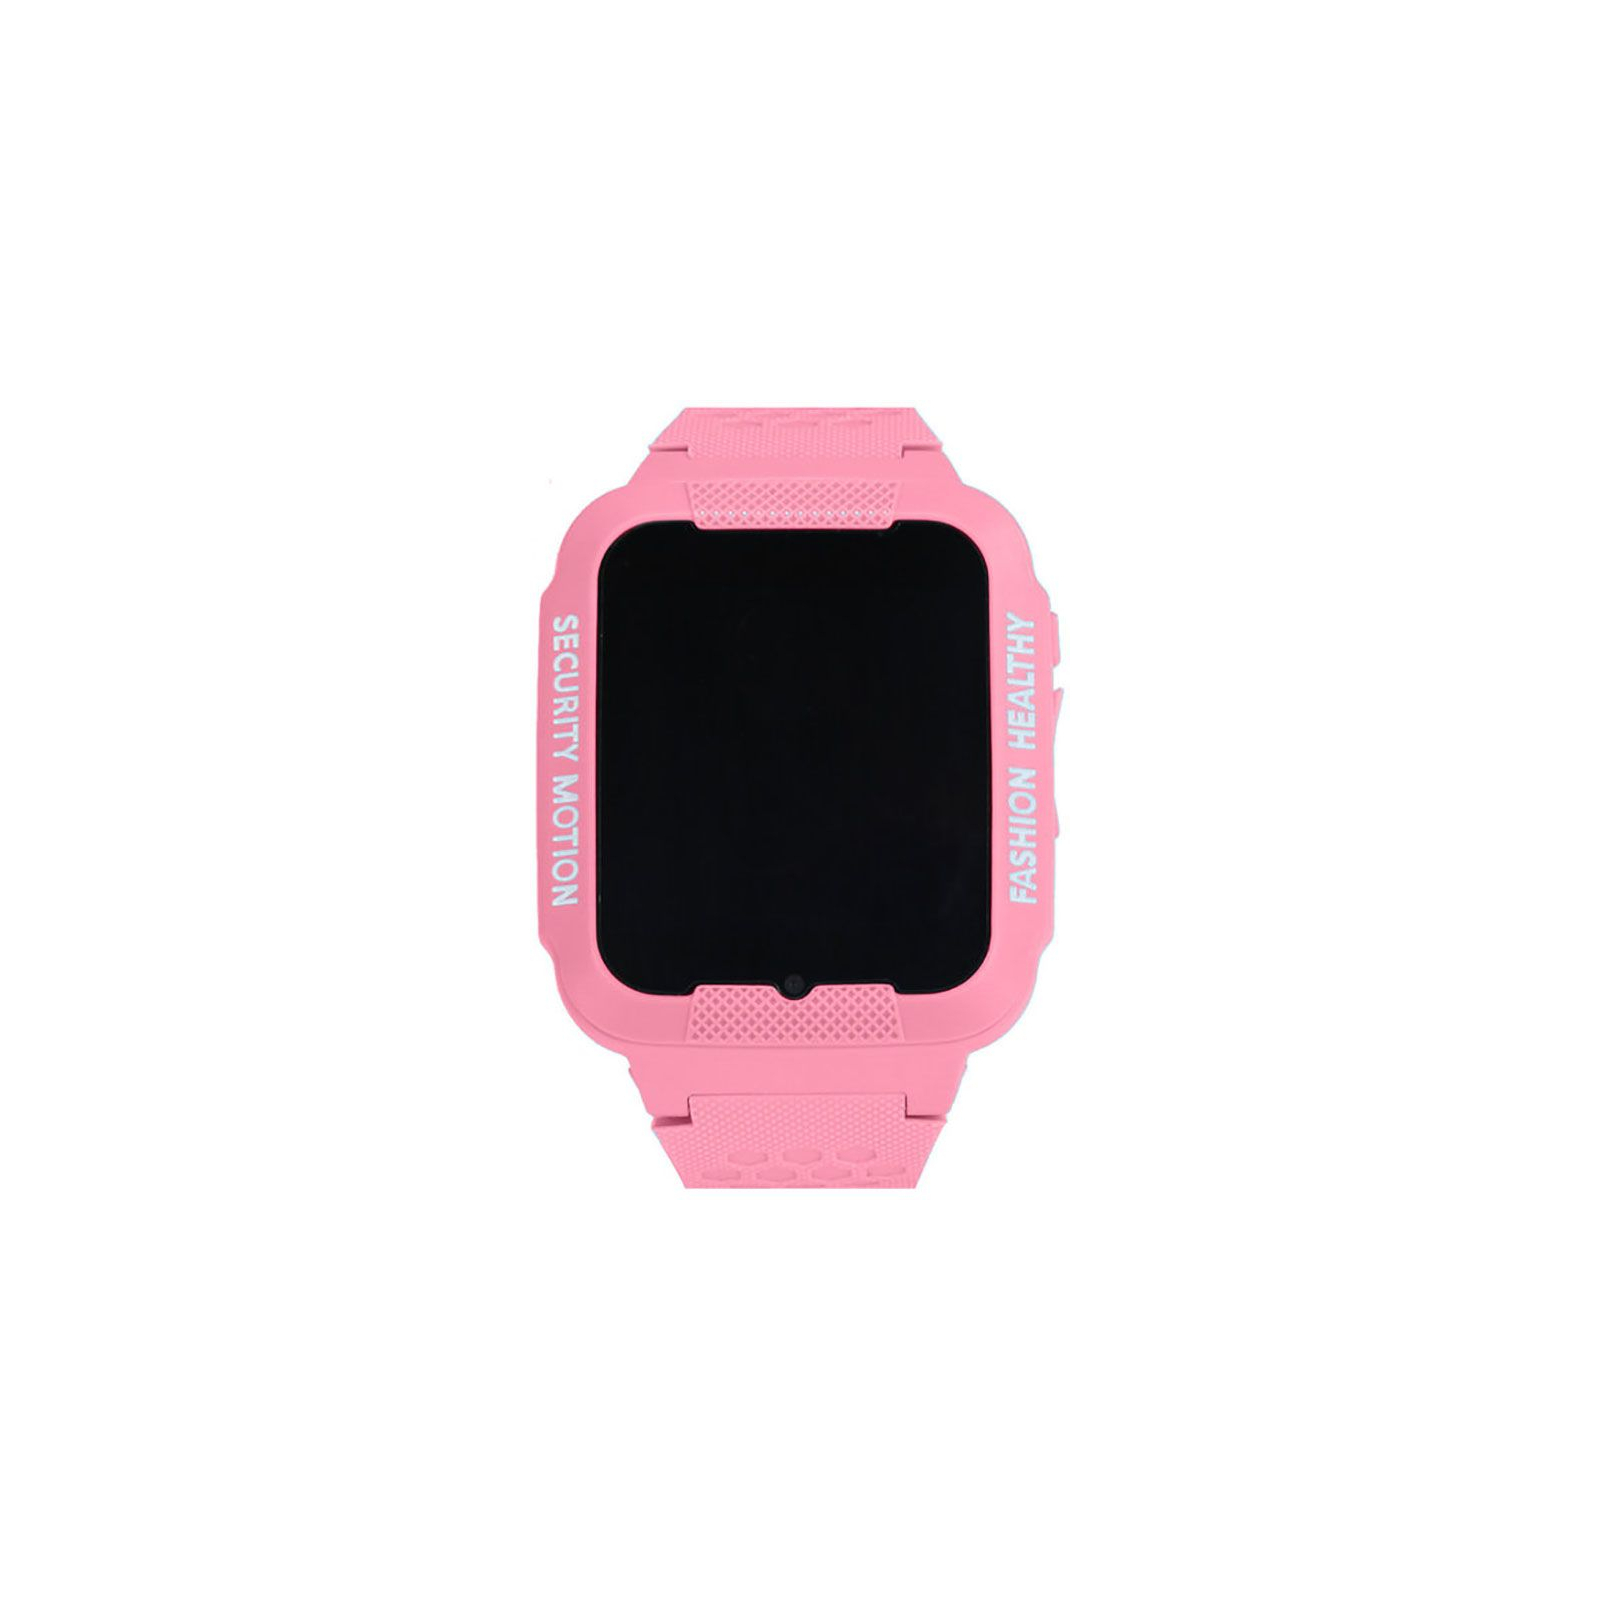 Смарт-часы UWatch K3 Kids waterproof smart watch Pink (F_51806)